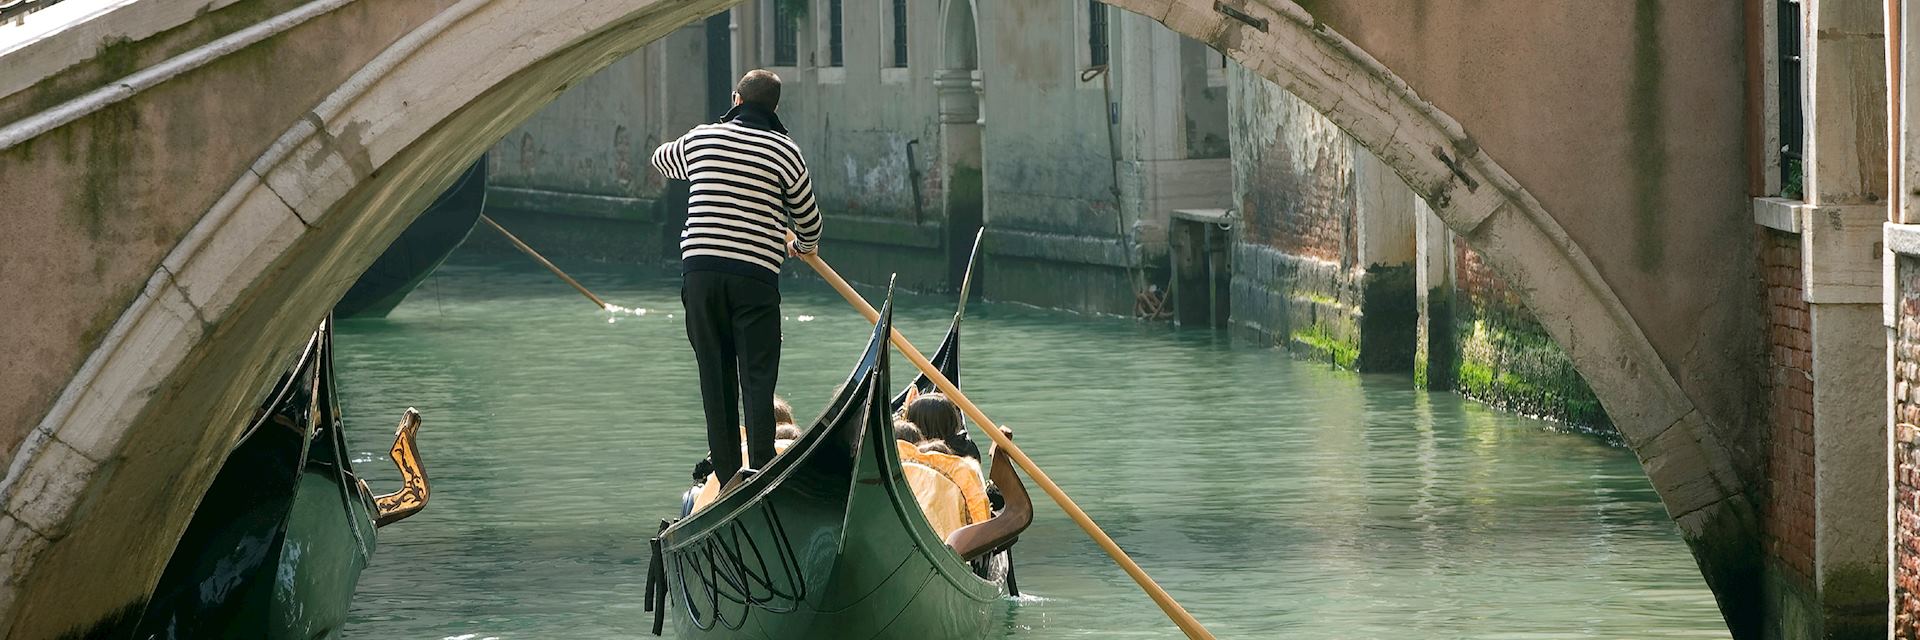 Gondola under an old bridge, Venice